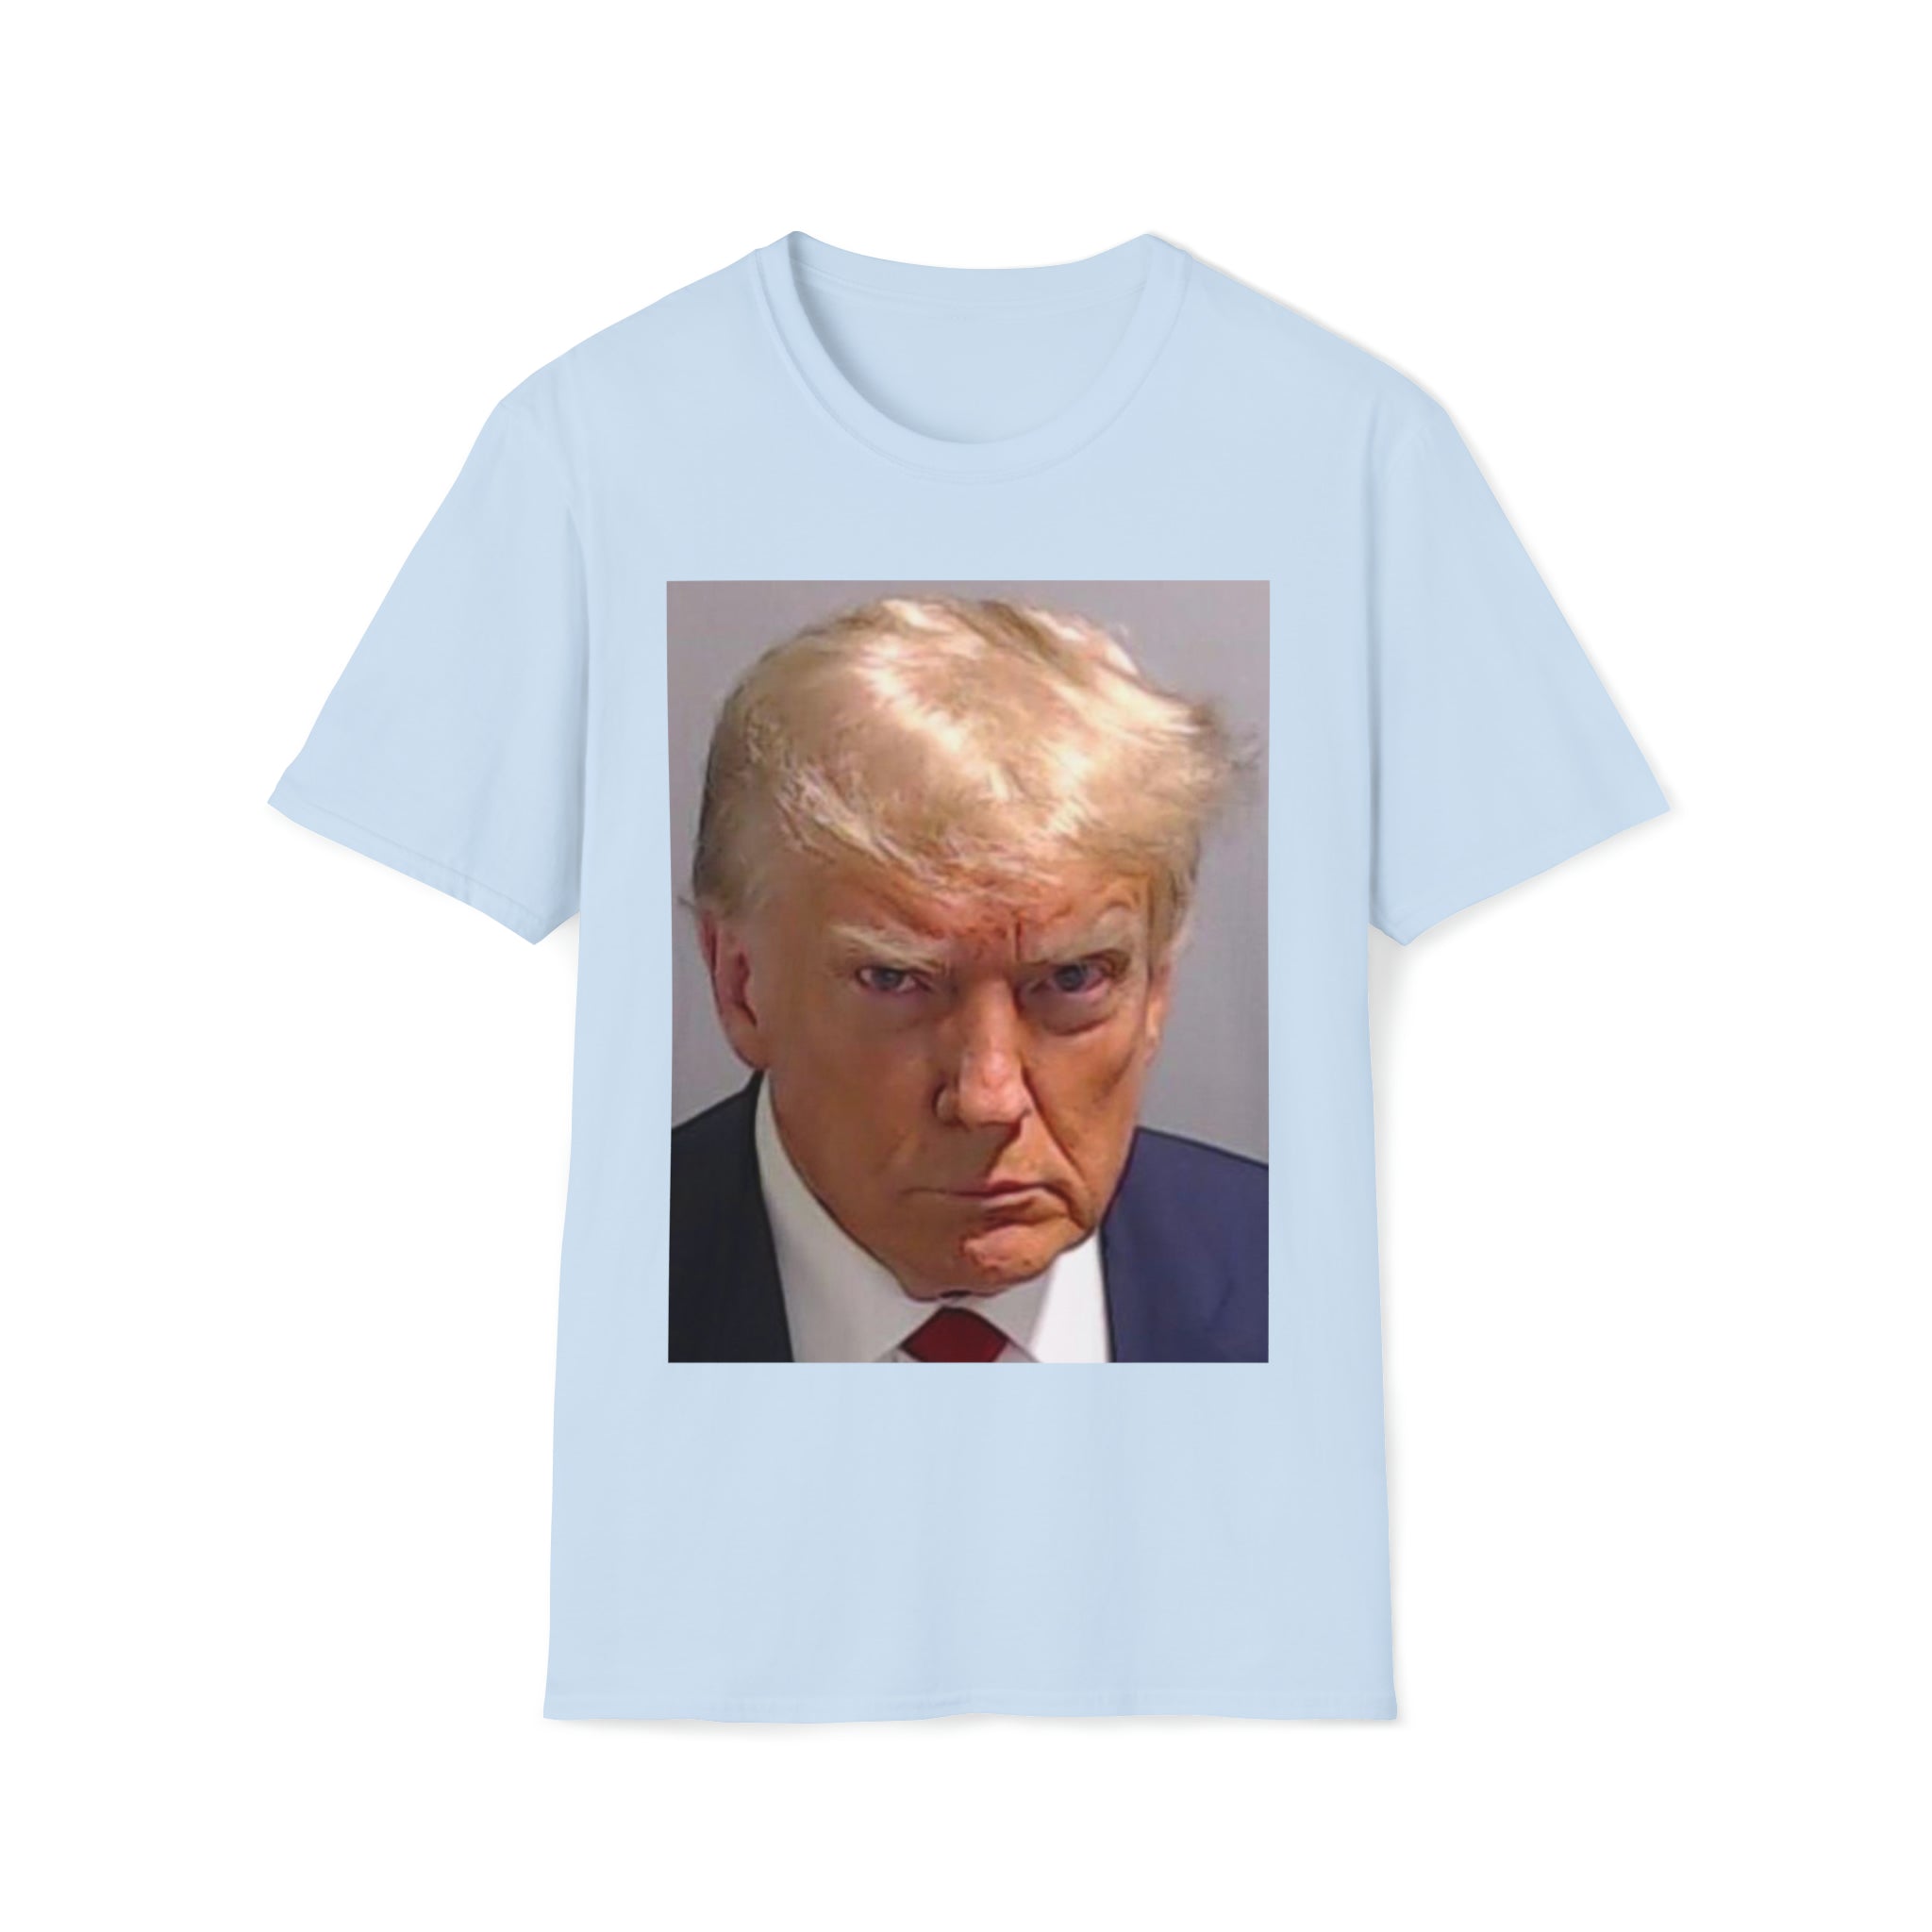 Trump Mug-Shot Tshirt